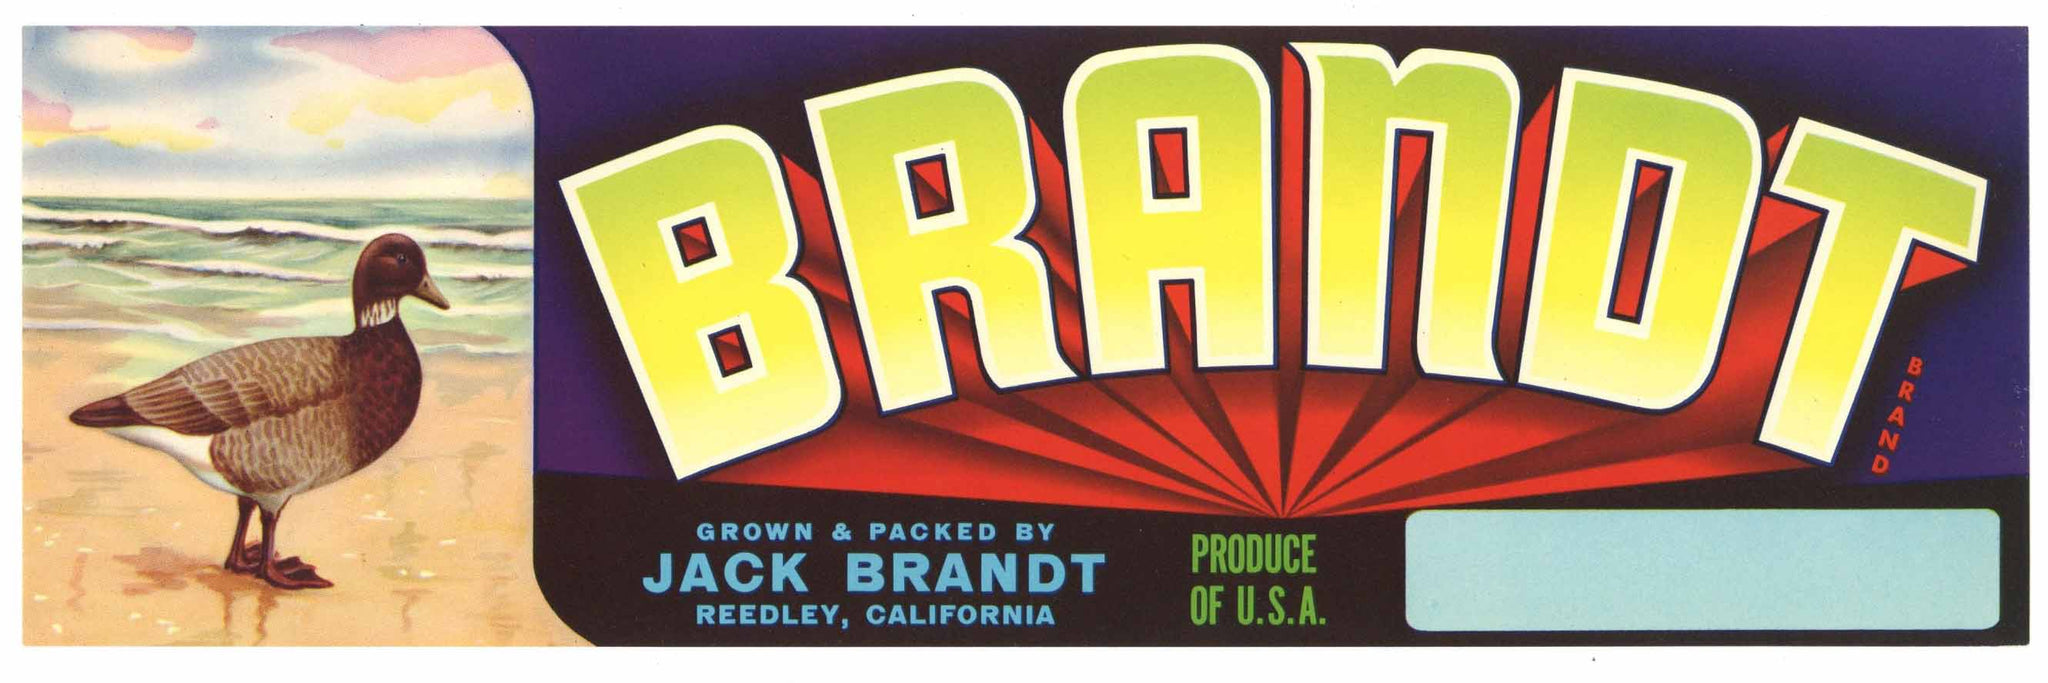 Brandt Brand Vintage Reedley Fruit  Crate Label